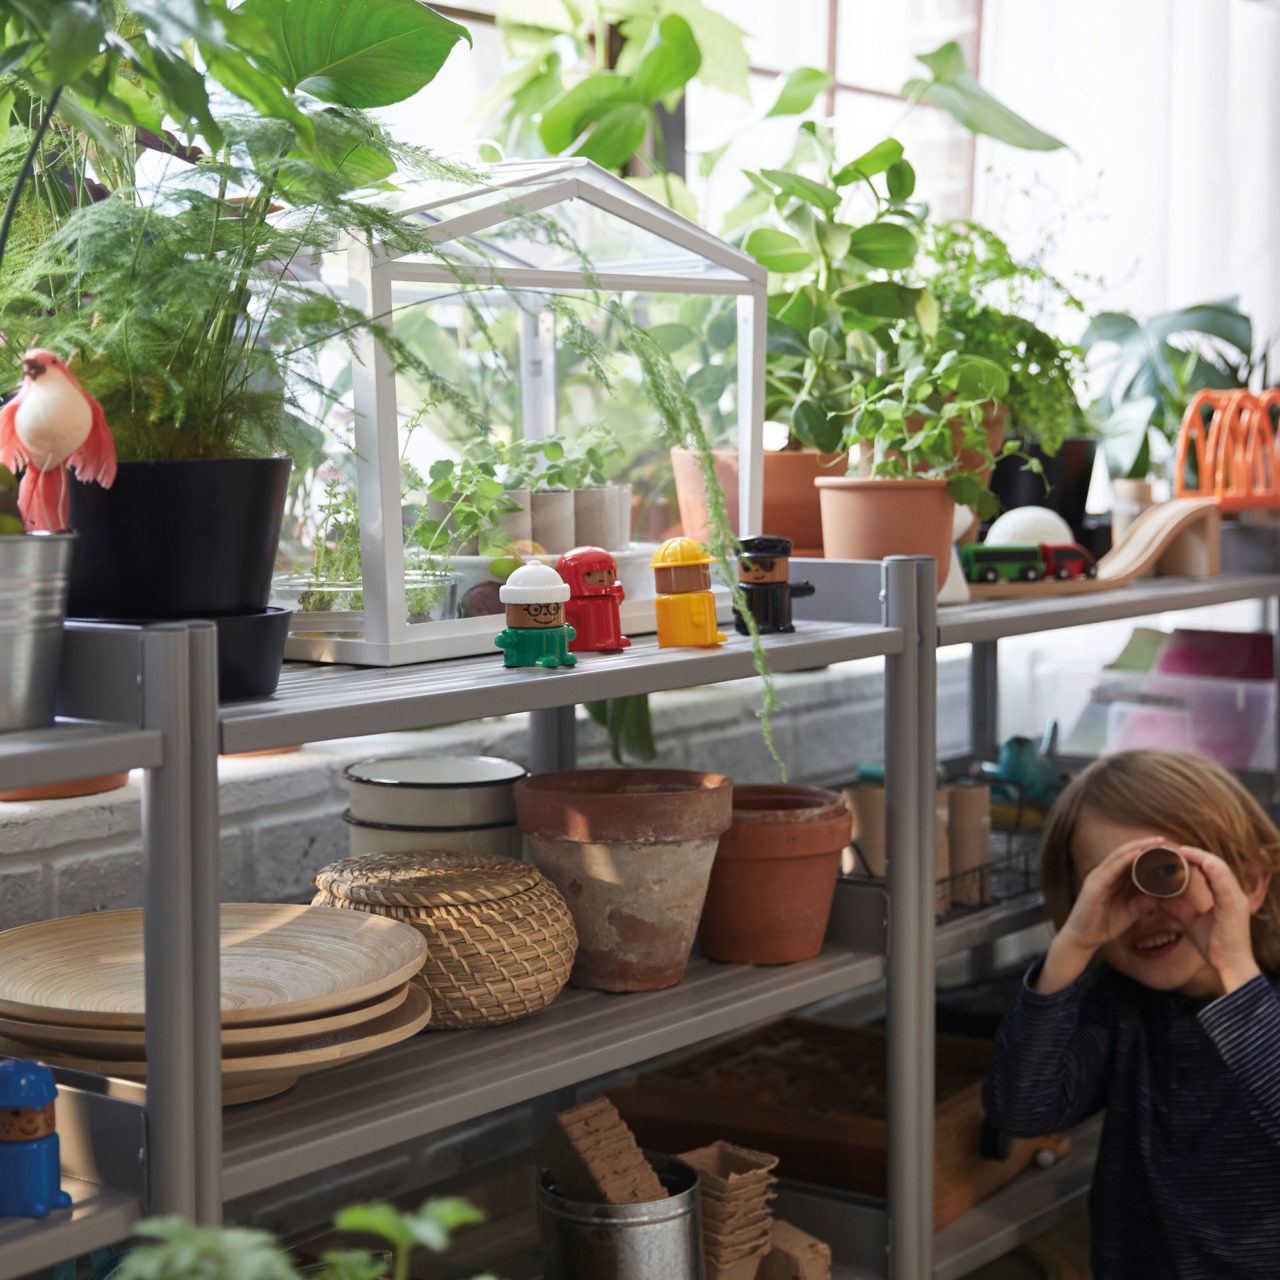 Junto a unas estanterías llenas de plantas verdes y accesorios para las plantas, un niño mira a través de un rollo de cocina.